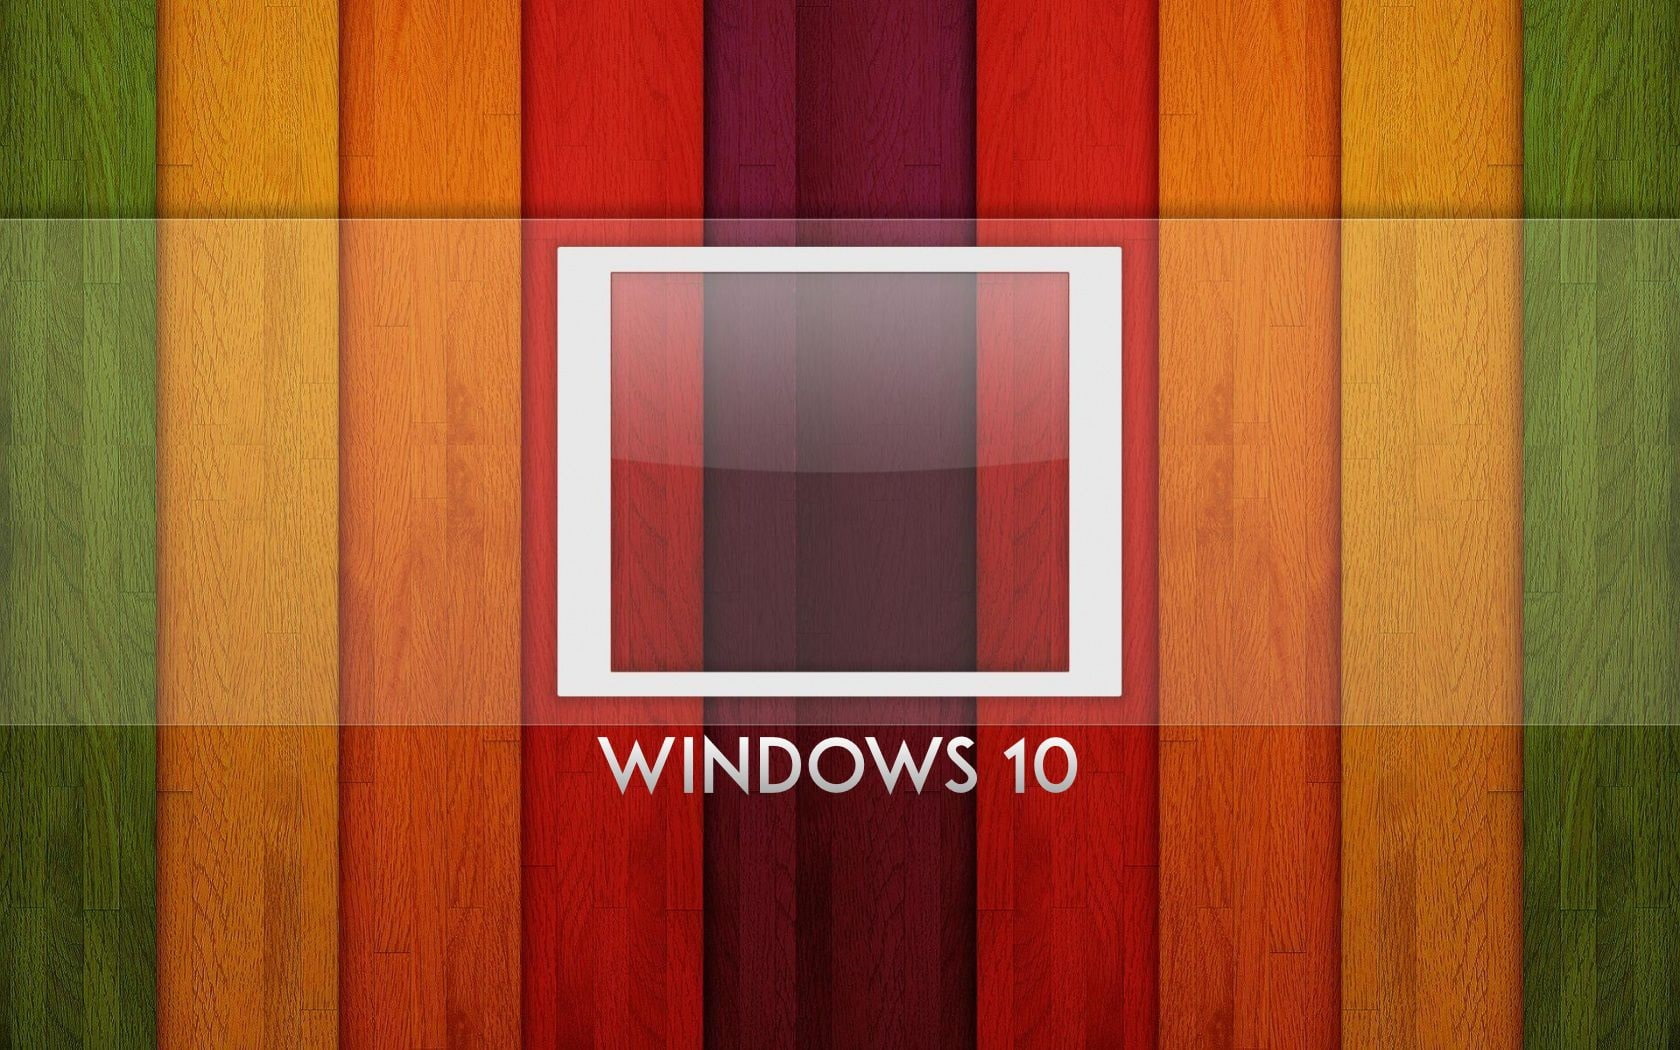 Windows 10 system, logo, rainbow background, wood board